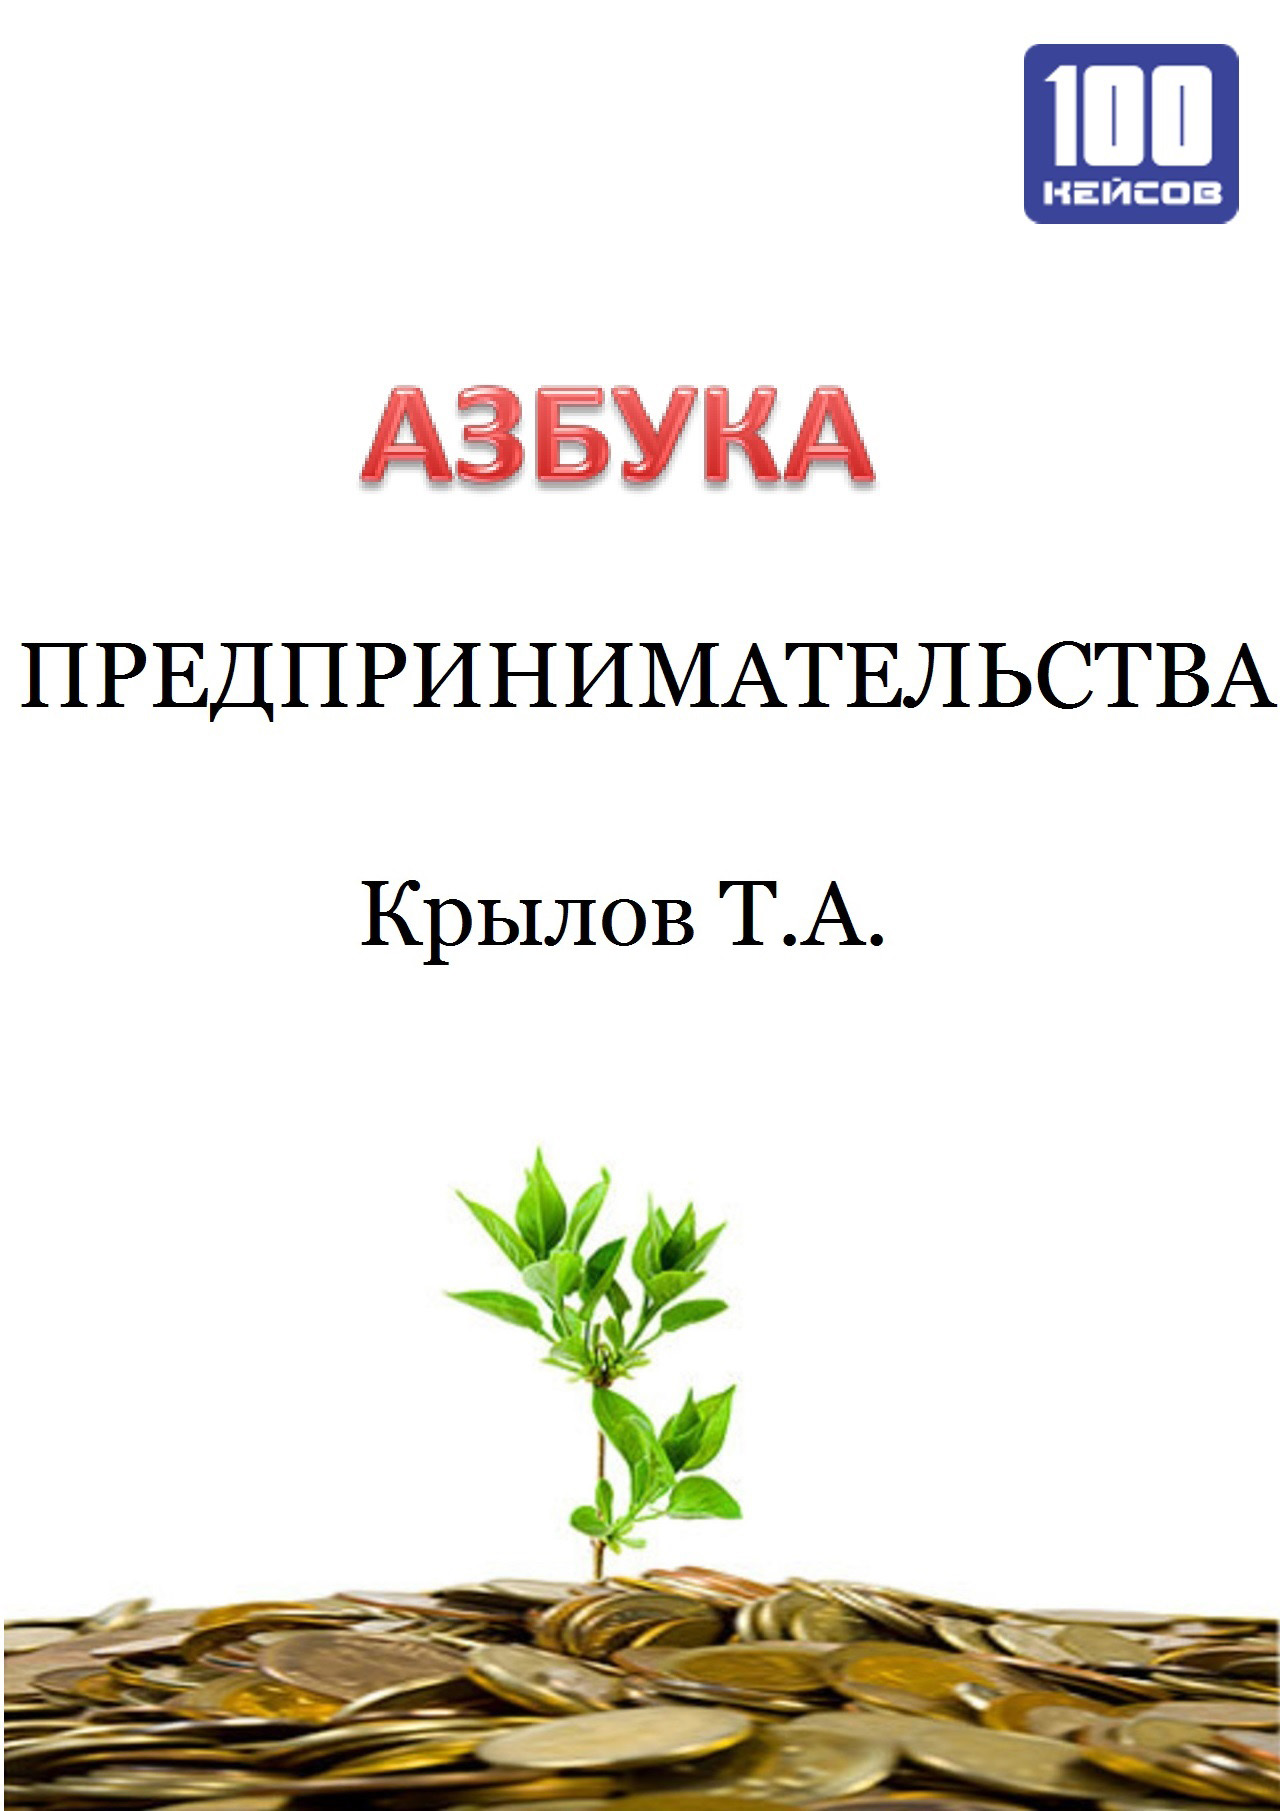 Книга  Азбука предпринимательства созданная Тимофей Крылов может относится к жанру просто о бизнесе, управление бизнесом. Стоимость электронной книги Азбука предпринимательства с идентификатором 22996570 составляет 349.00 руб.